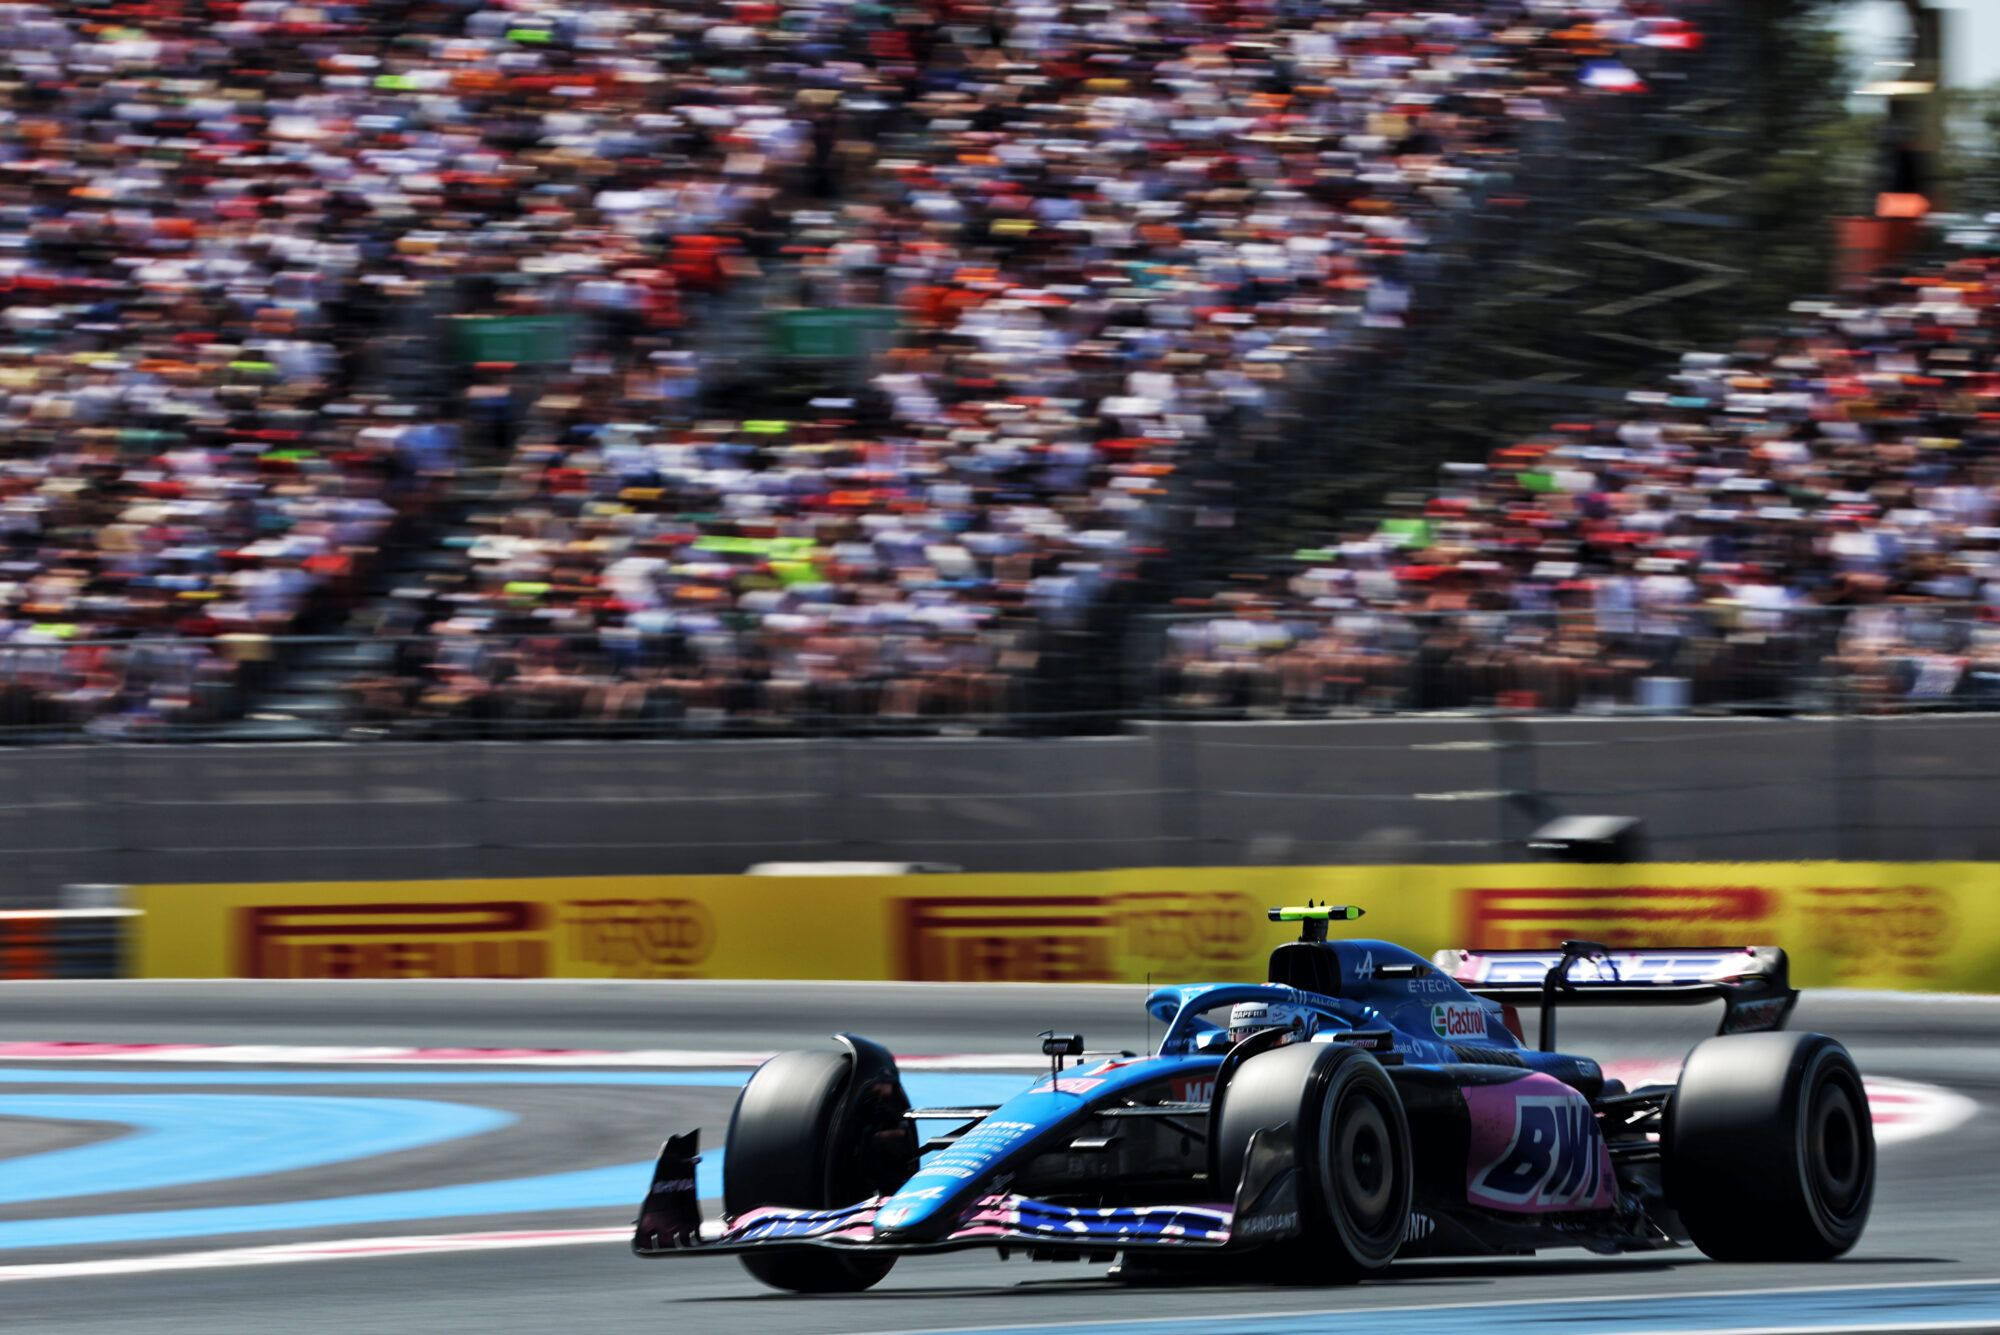 2022 - Grand Prix de France - dimanche (1)